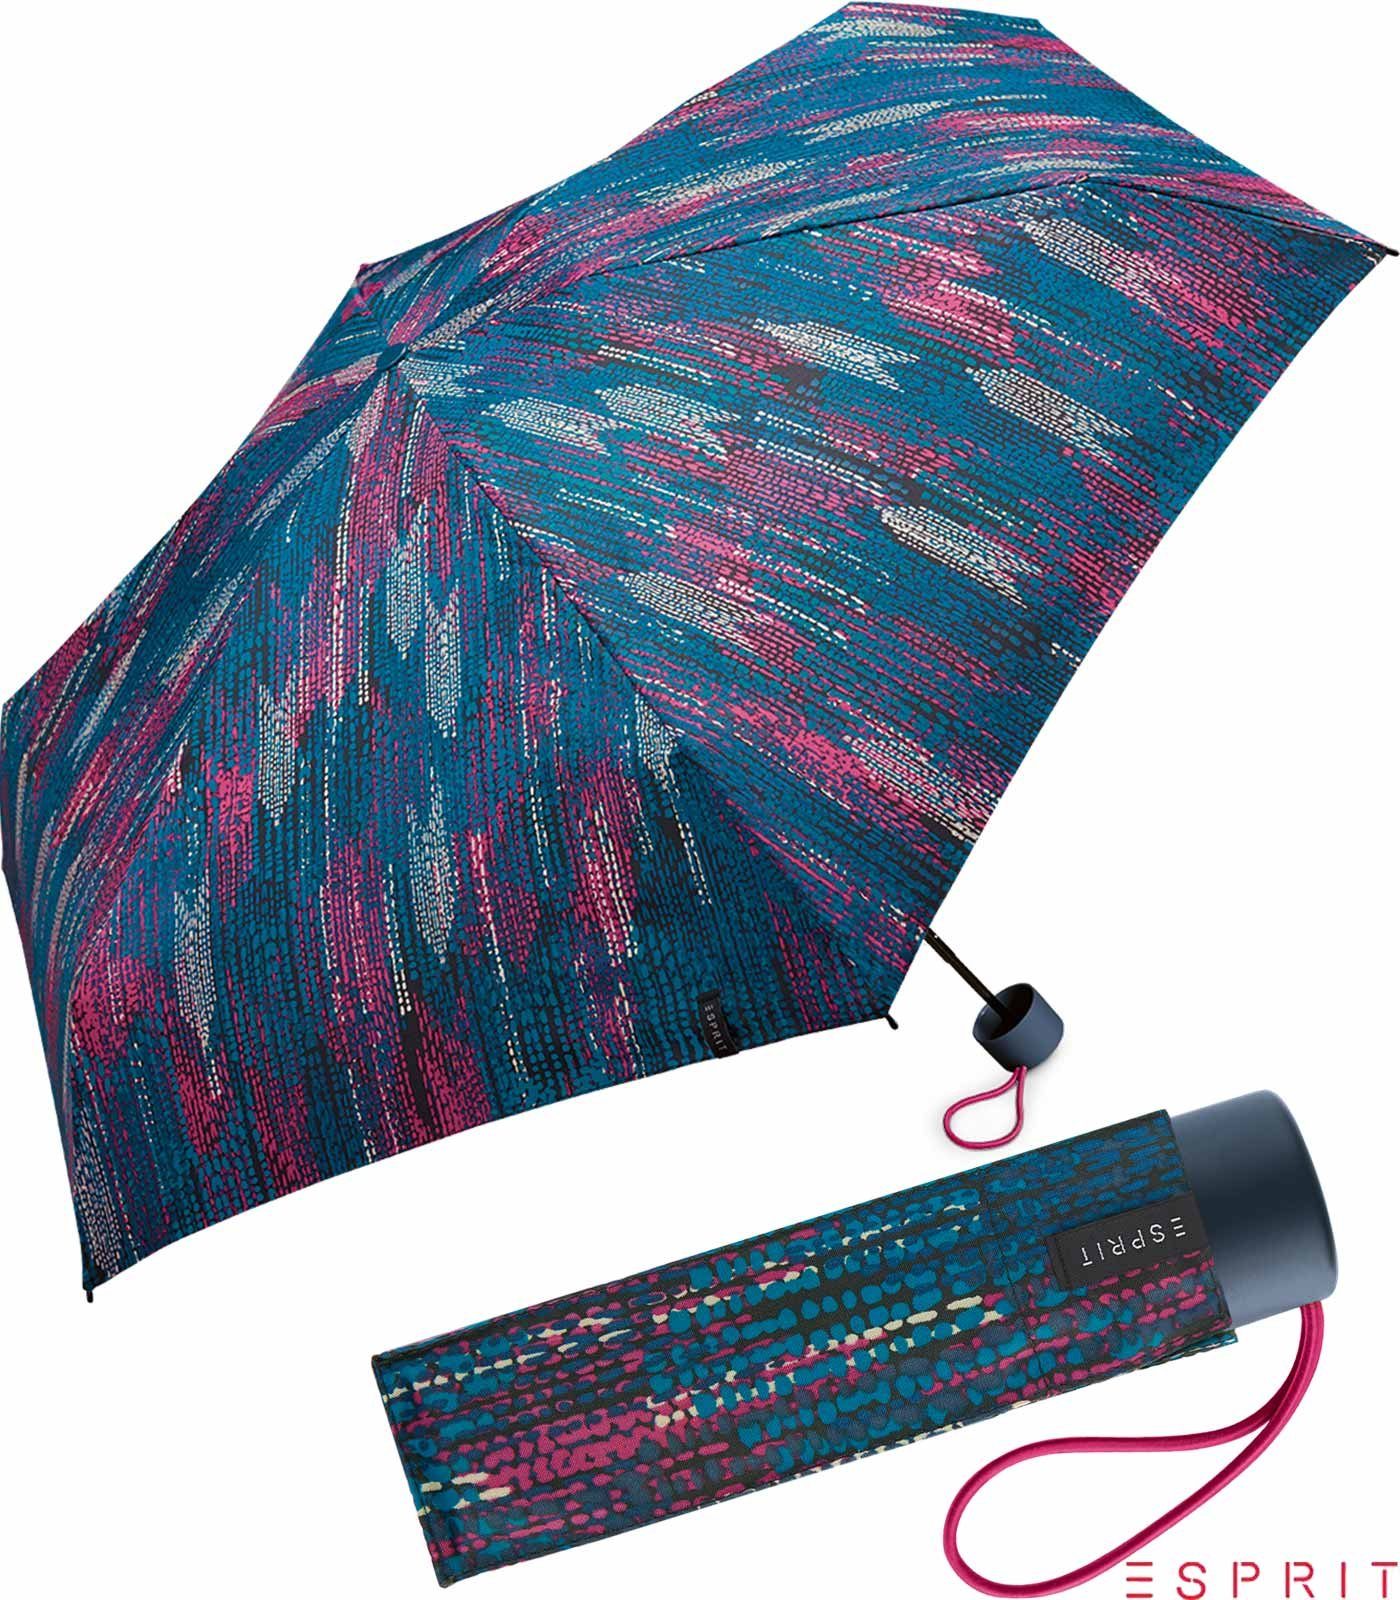 Esprit Taschenregenschirm Damen Super Mini Regenschirm Petito Blurred Edges - ocean depths, winzig klein, in bunter verwaschener Optik blau